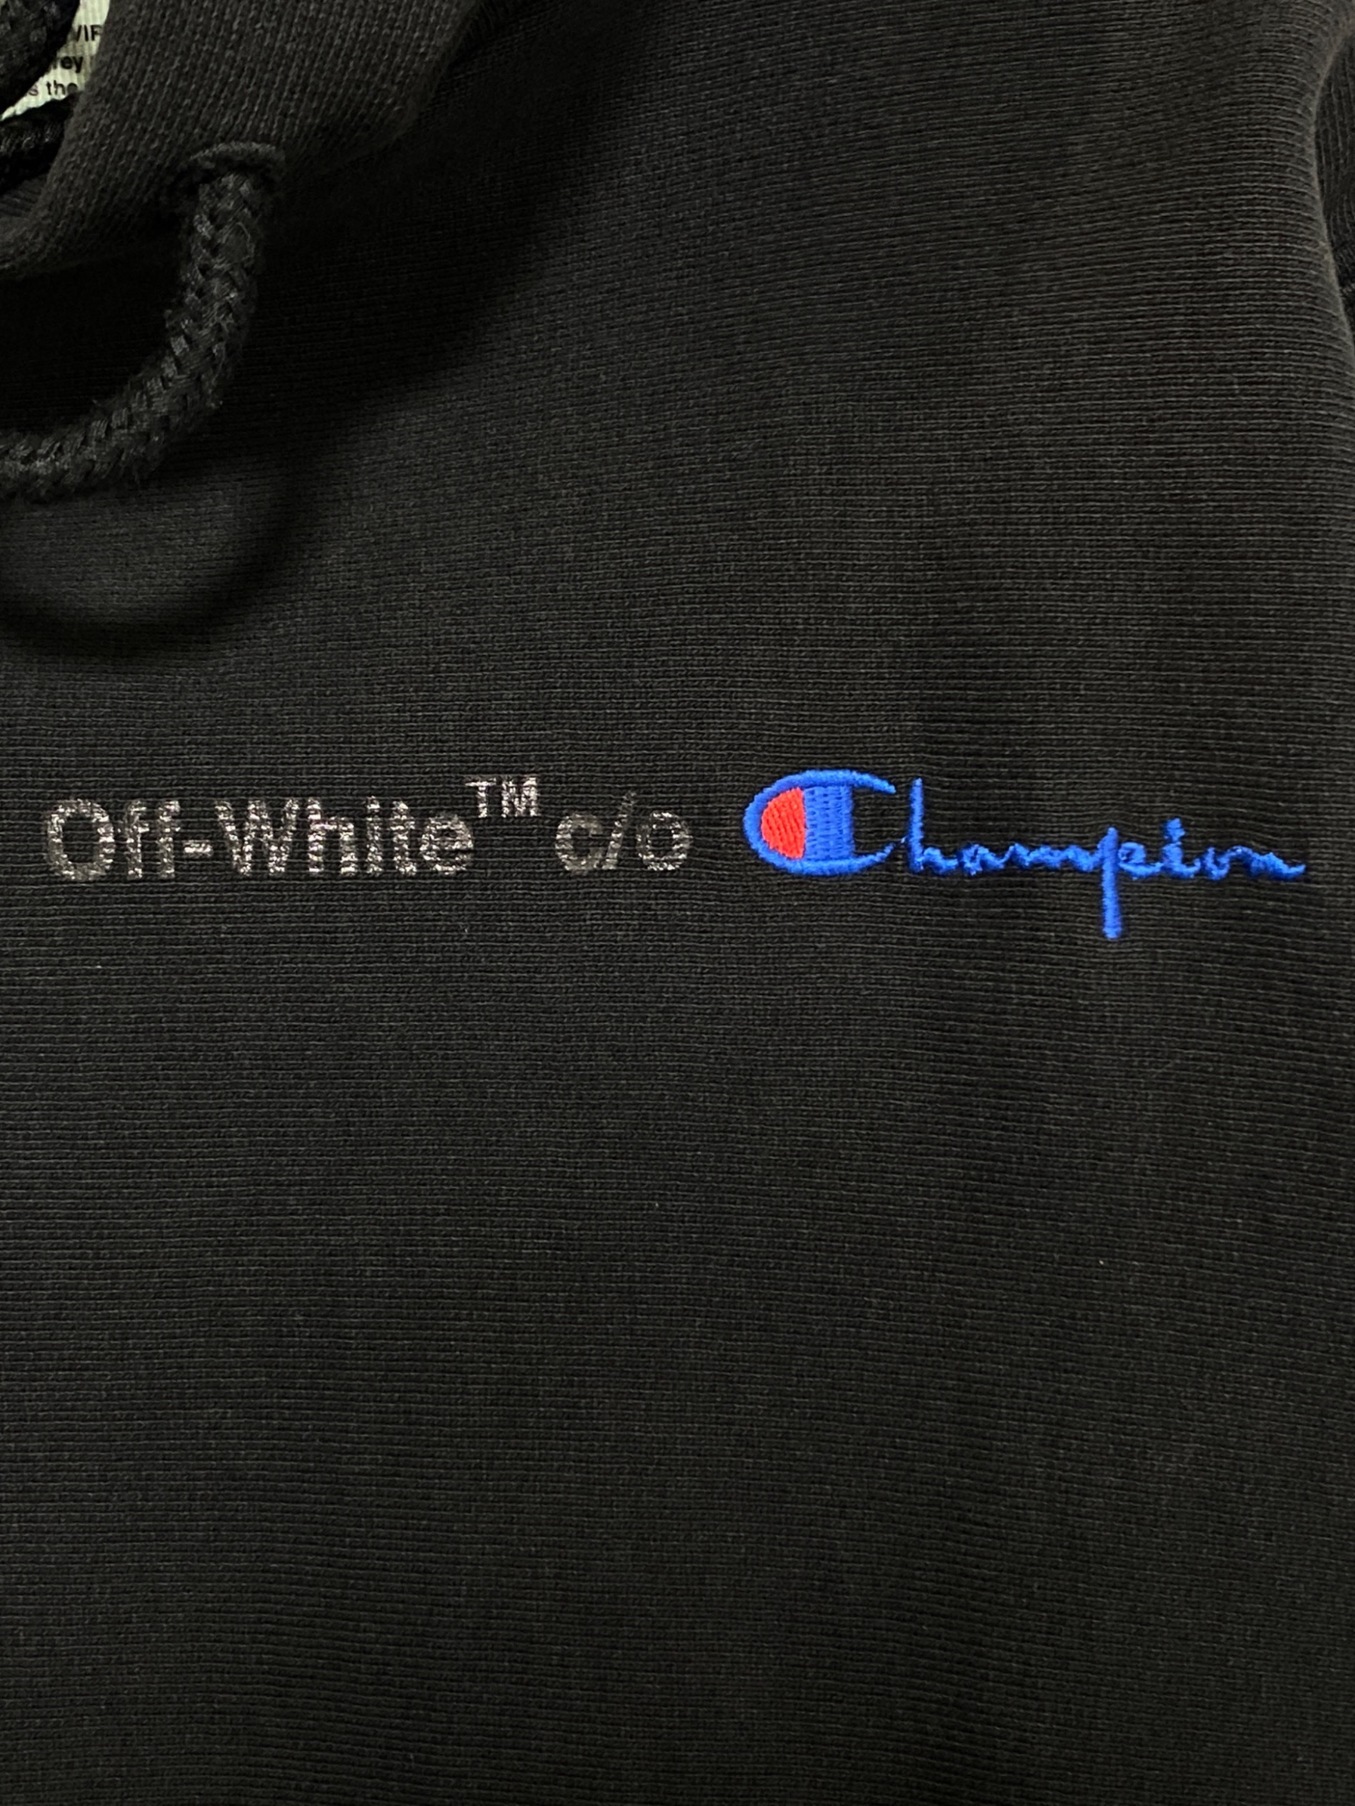 OFFWHITE (オフホワイト) Champion (チャンピオン) ダメージ加工パーカー ブラック サイズ:XS